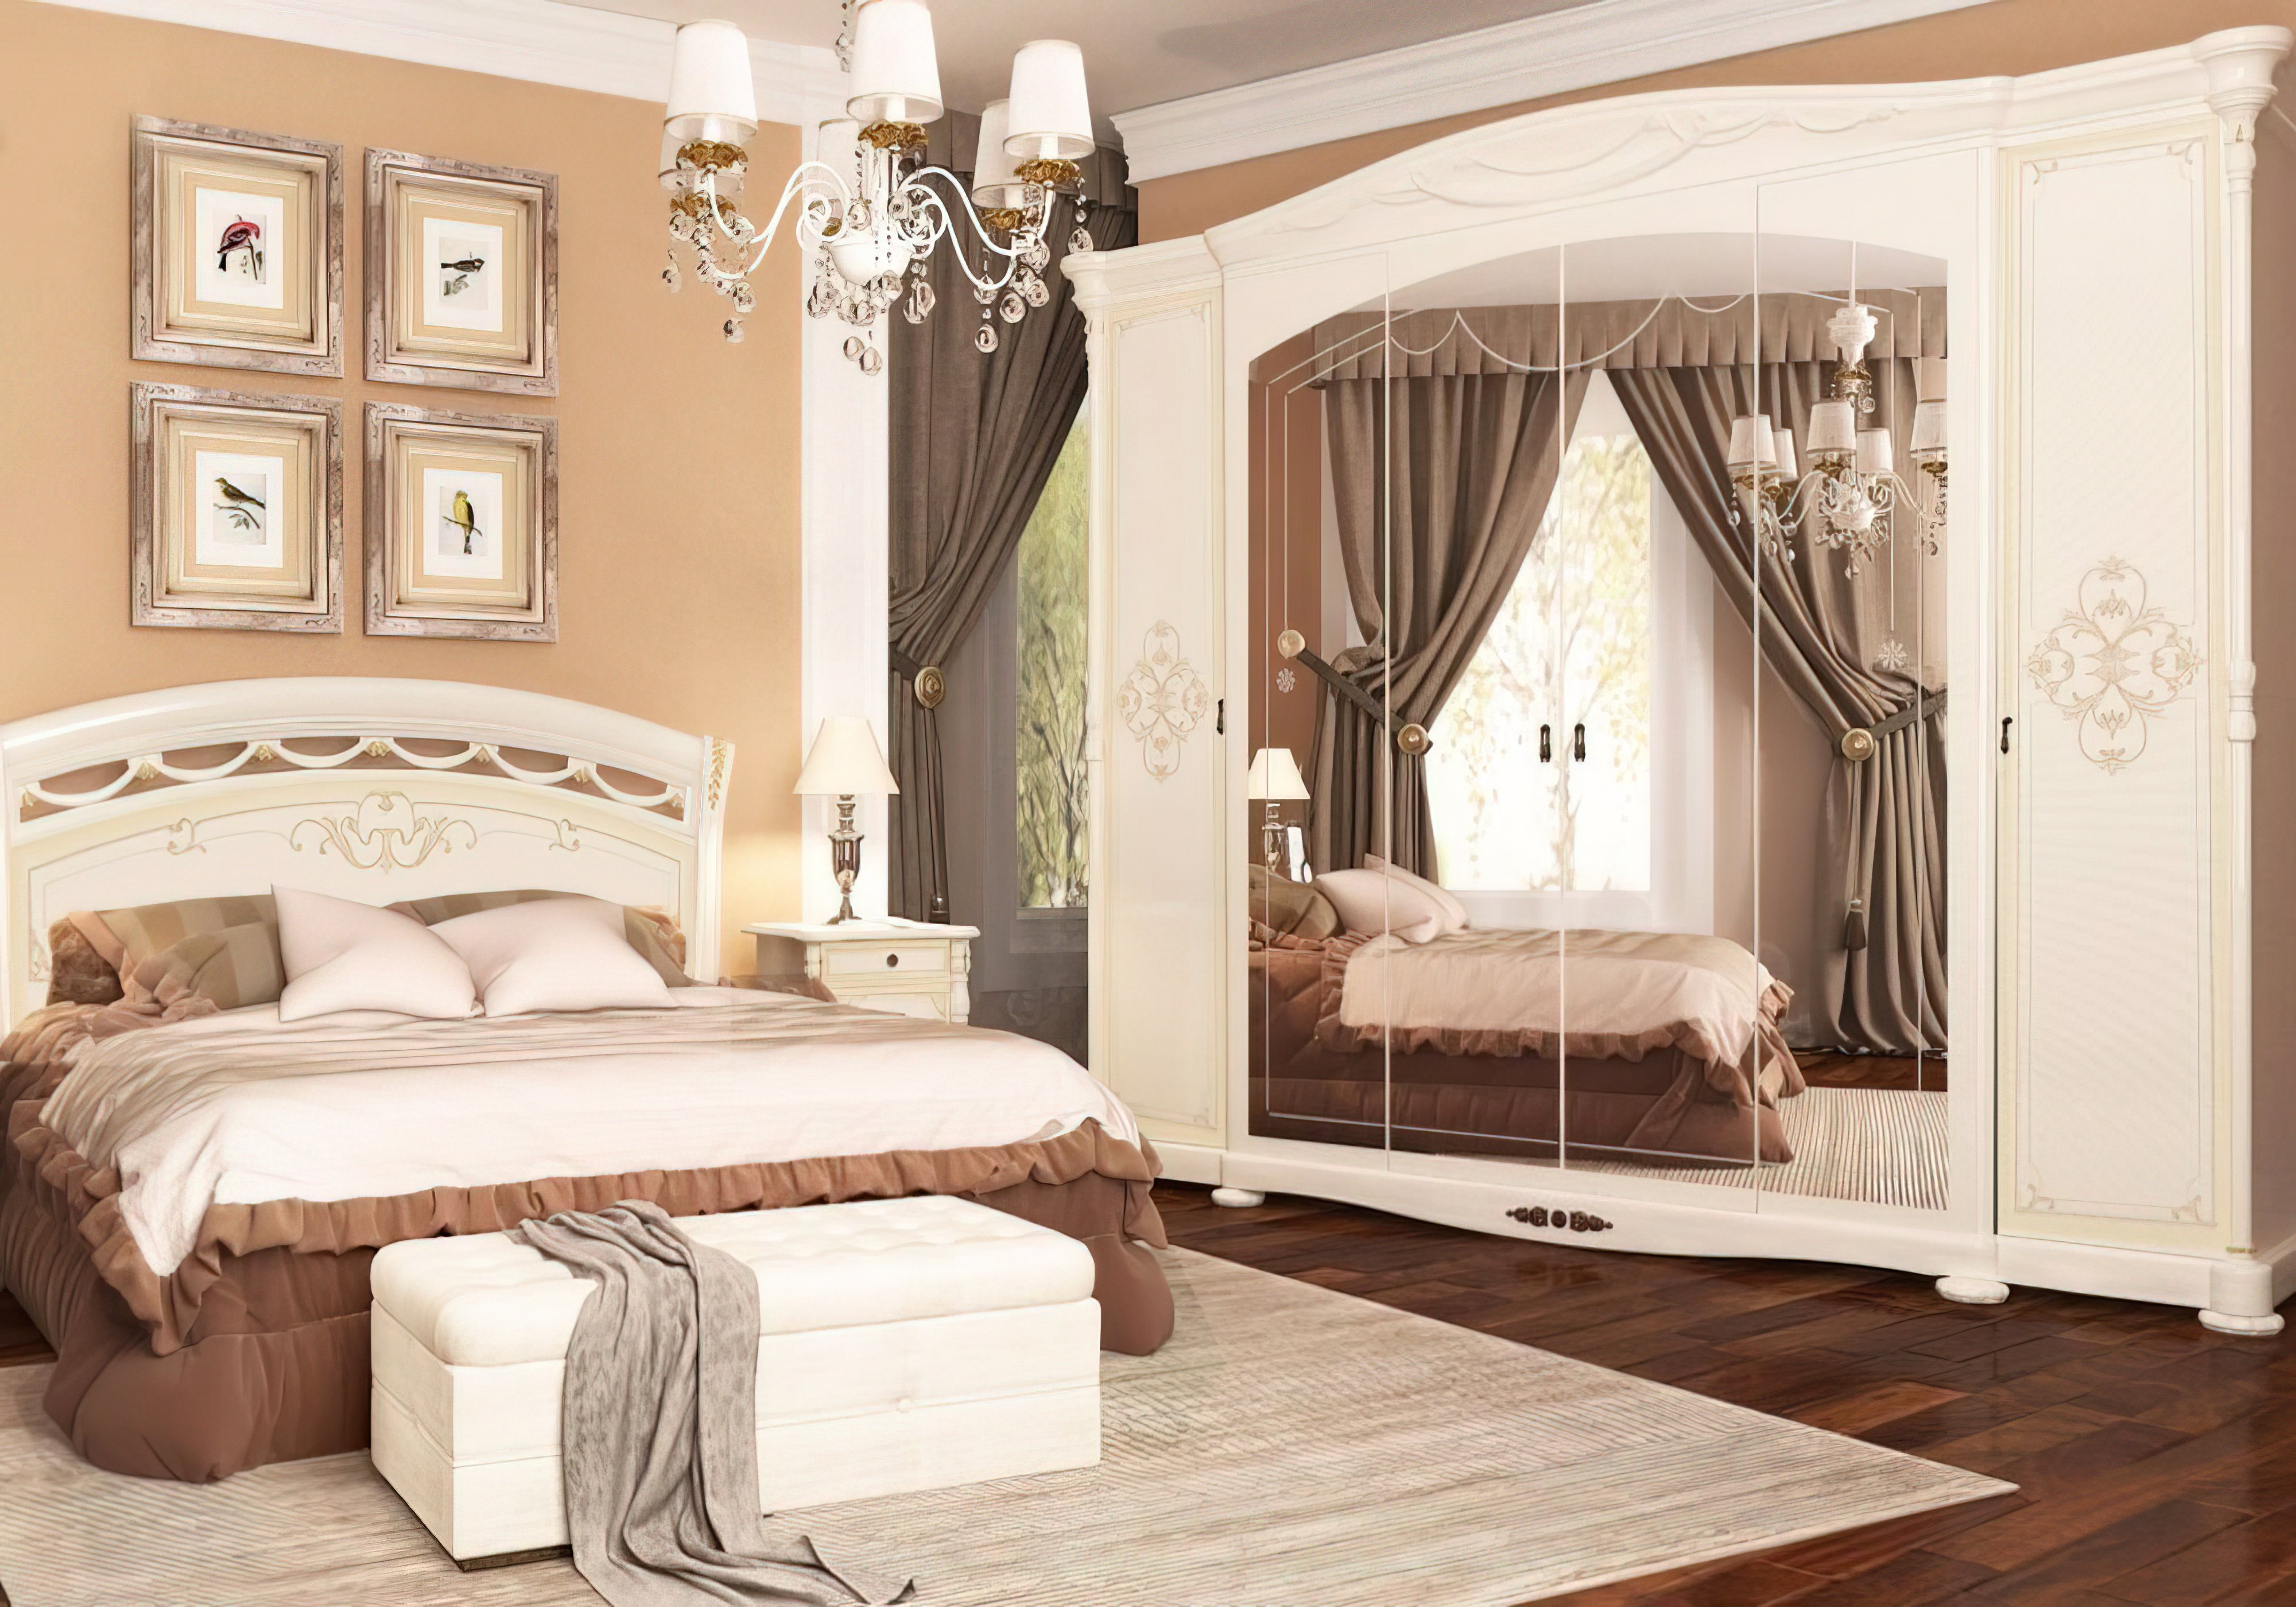  Купить Кровати с подъемным механизмом Кровать с подъемным механизмом "Роселла" MiroMark